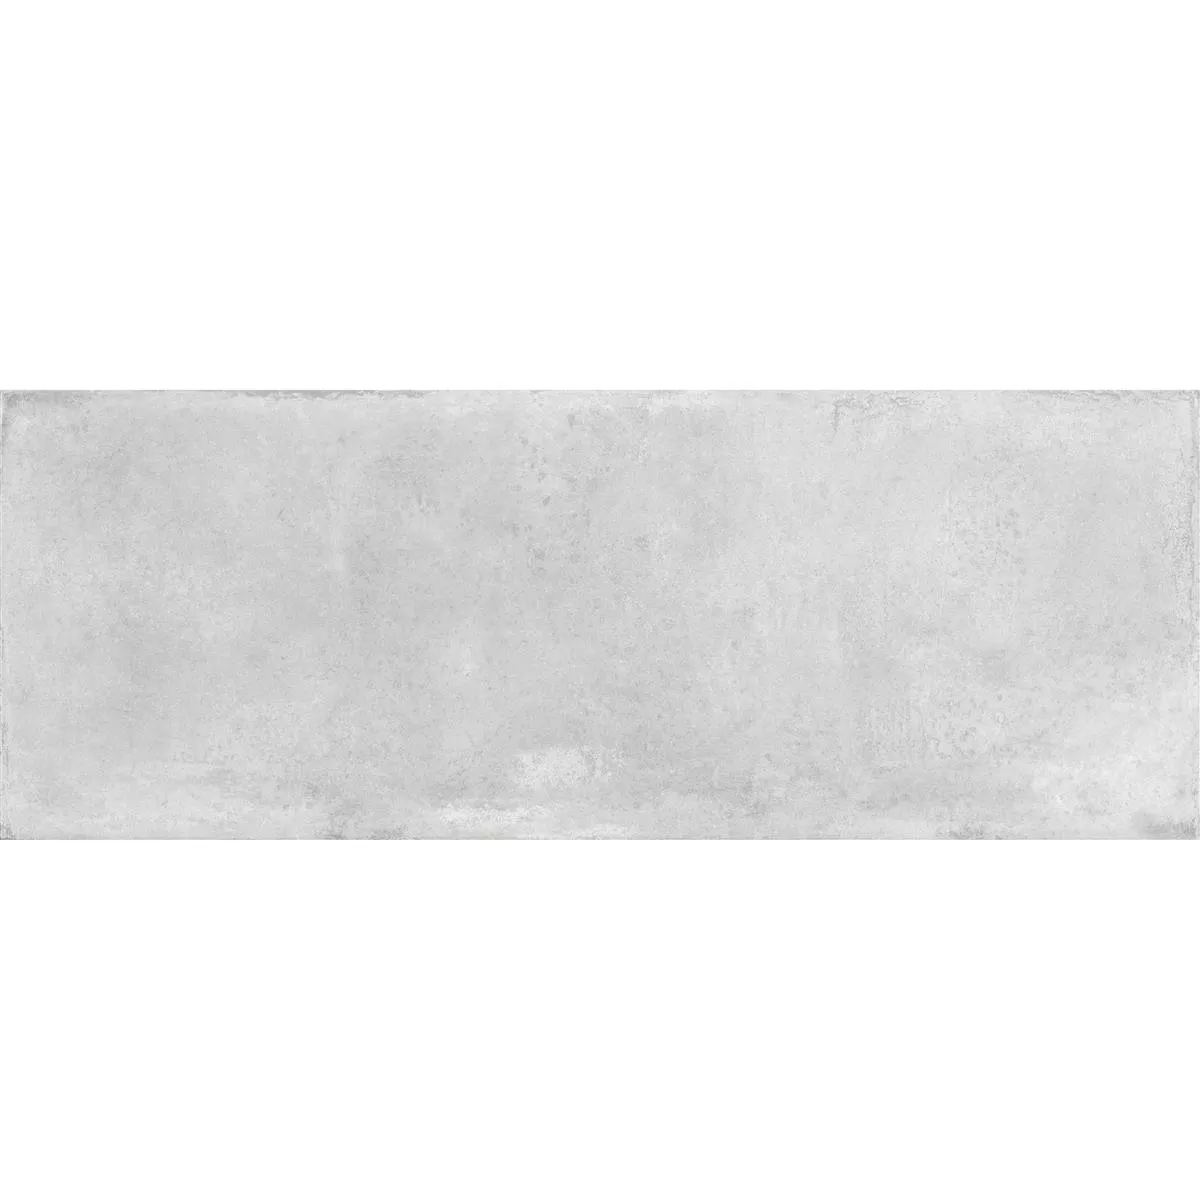 Πρότυπο Πλακάκια Tοίχου Catarina Συγκεκριμένη Εμφάνιση Παγωμένος 15x40cm Ασπρο